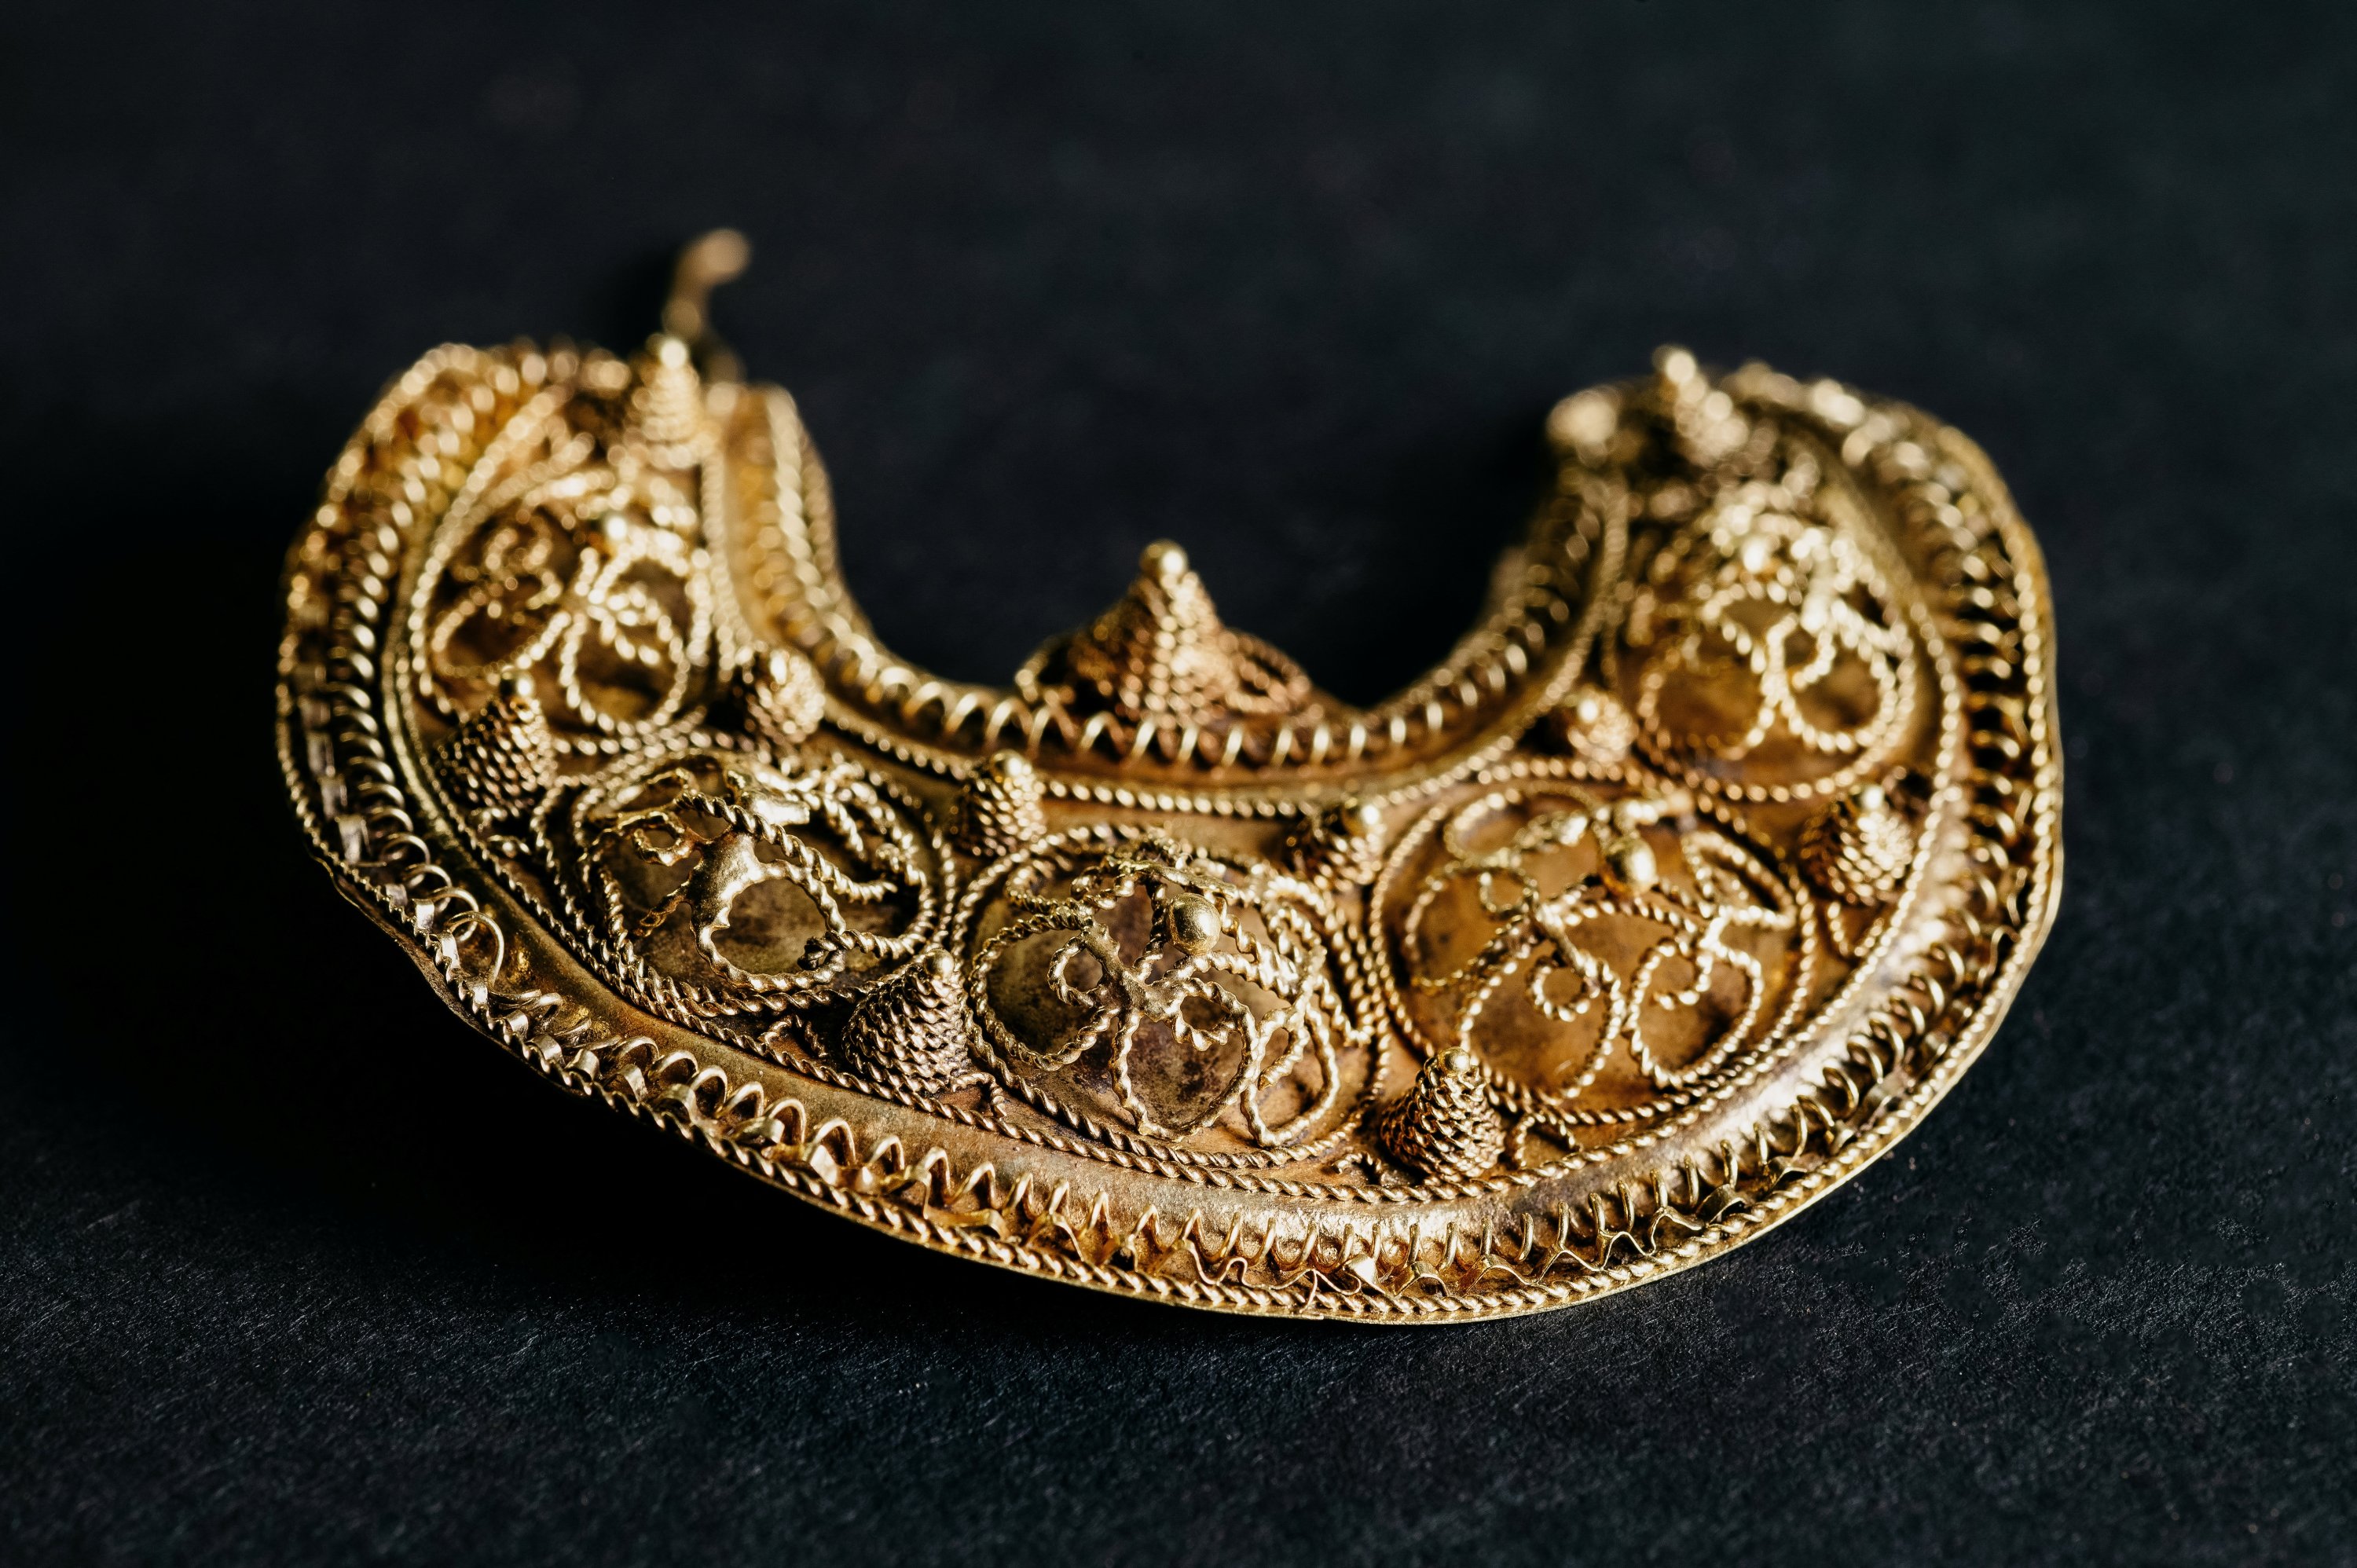 Часть 1000-летнего средневекового сокровища, обнаруженного в Хугвуде, Нидерланды, состоящего из драгоценностей и серебряных монет, показана на этом недатированном раздаточном изображении.  (Фото Рейтер)